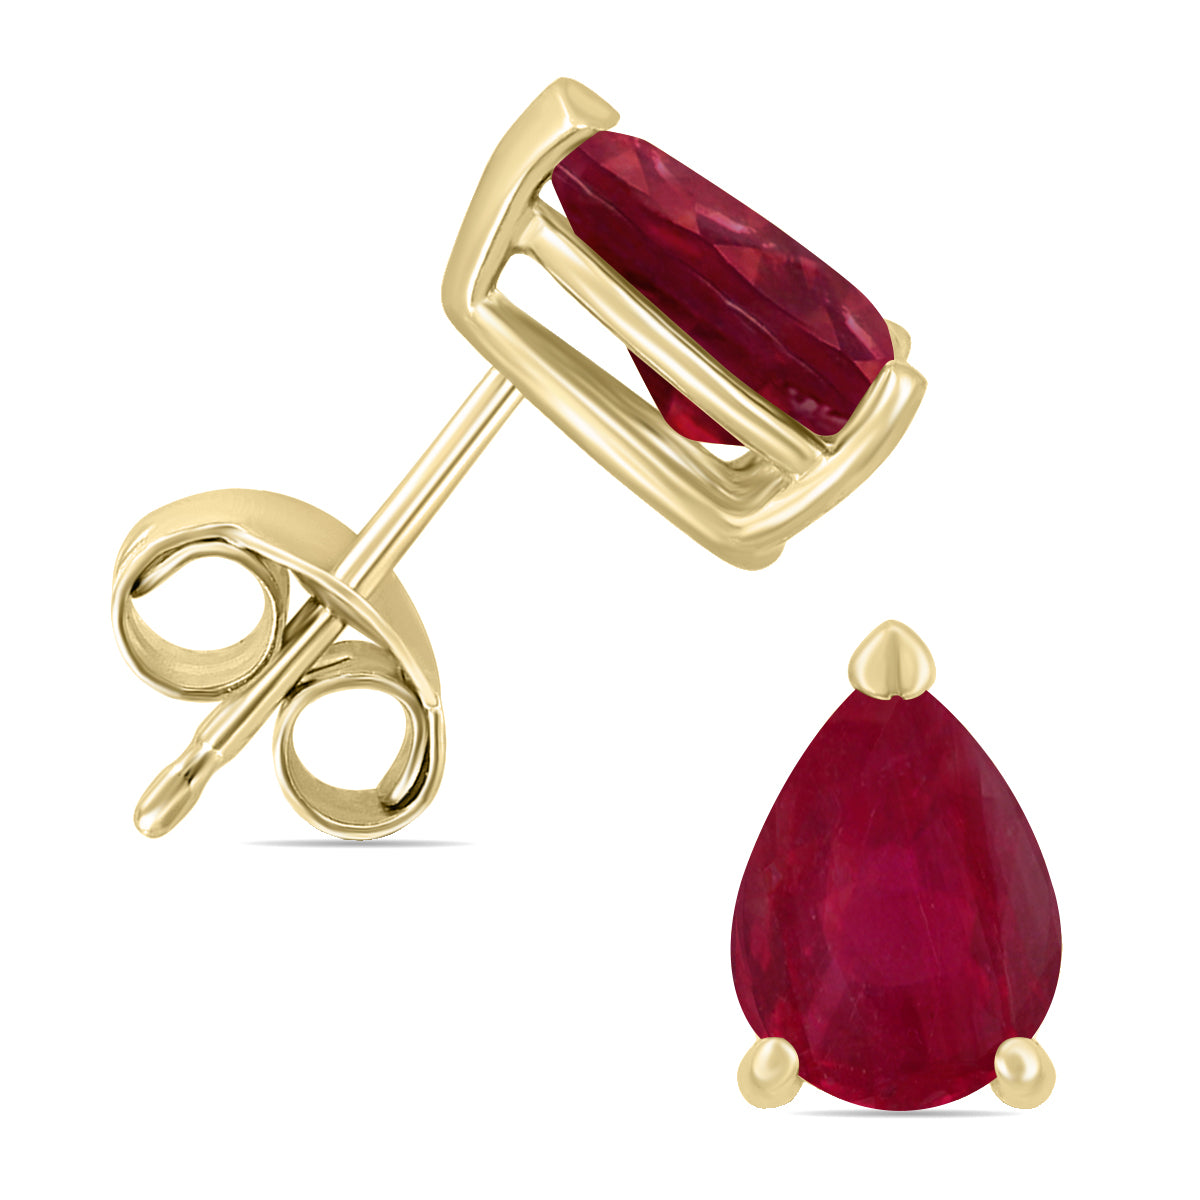 Sselects 14k 5x3mm Pear Ruby Earrings In Burgundy